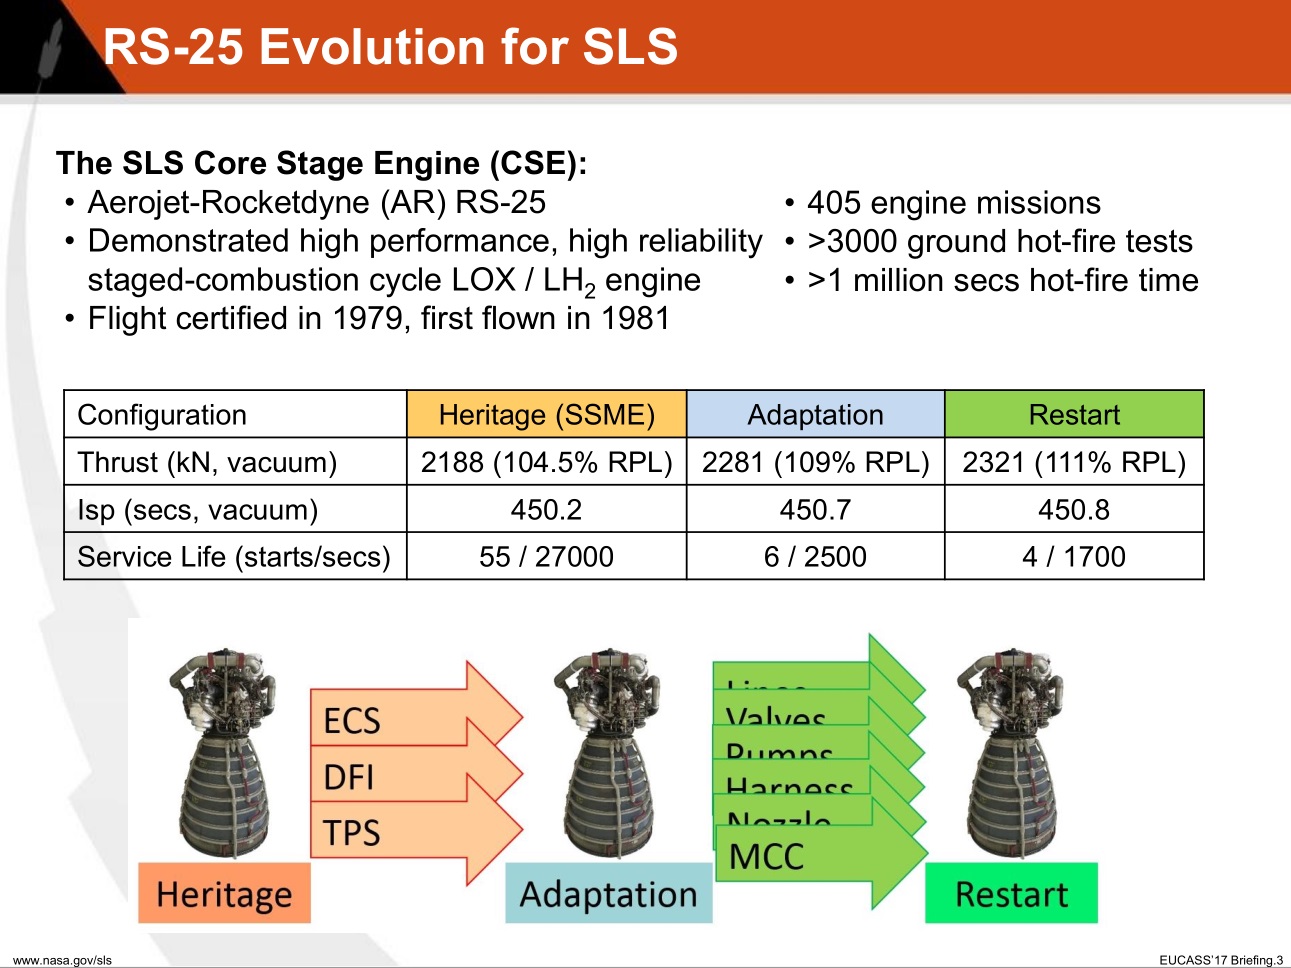 RS-25-Evolution-For-SLS.jpg